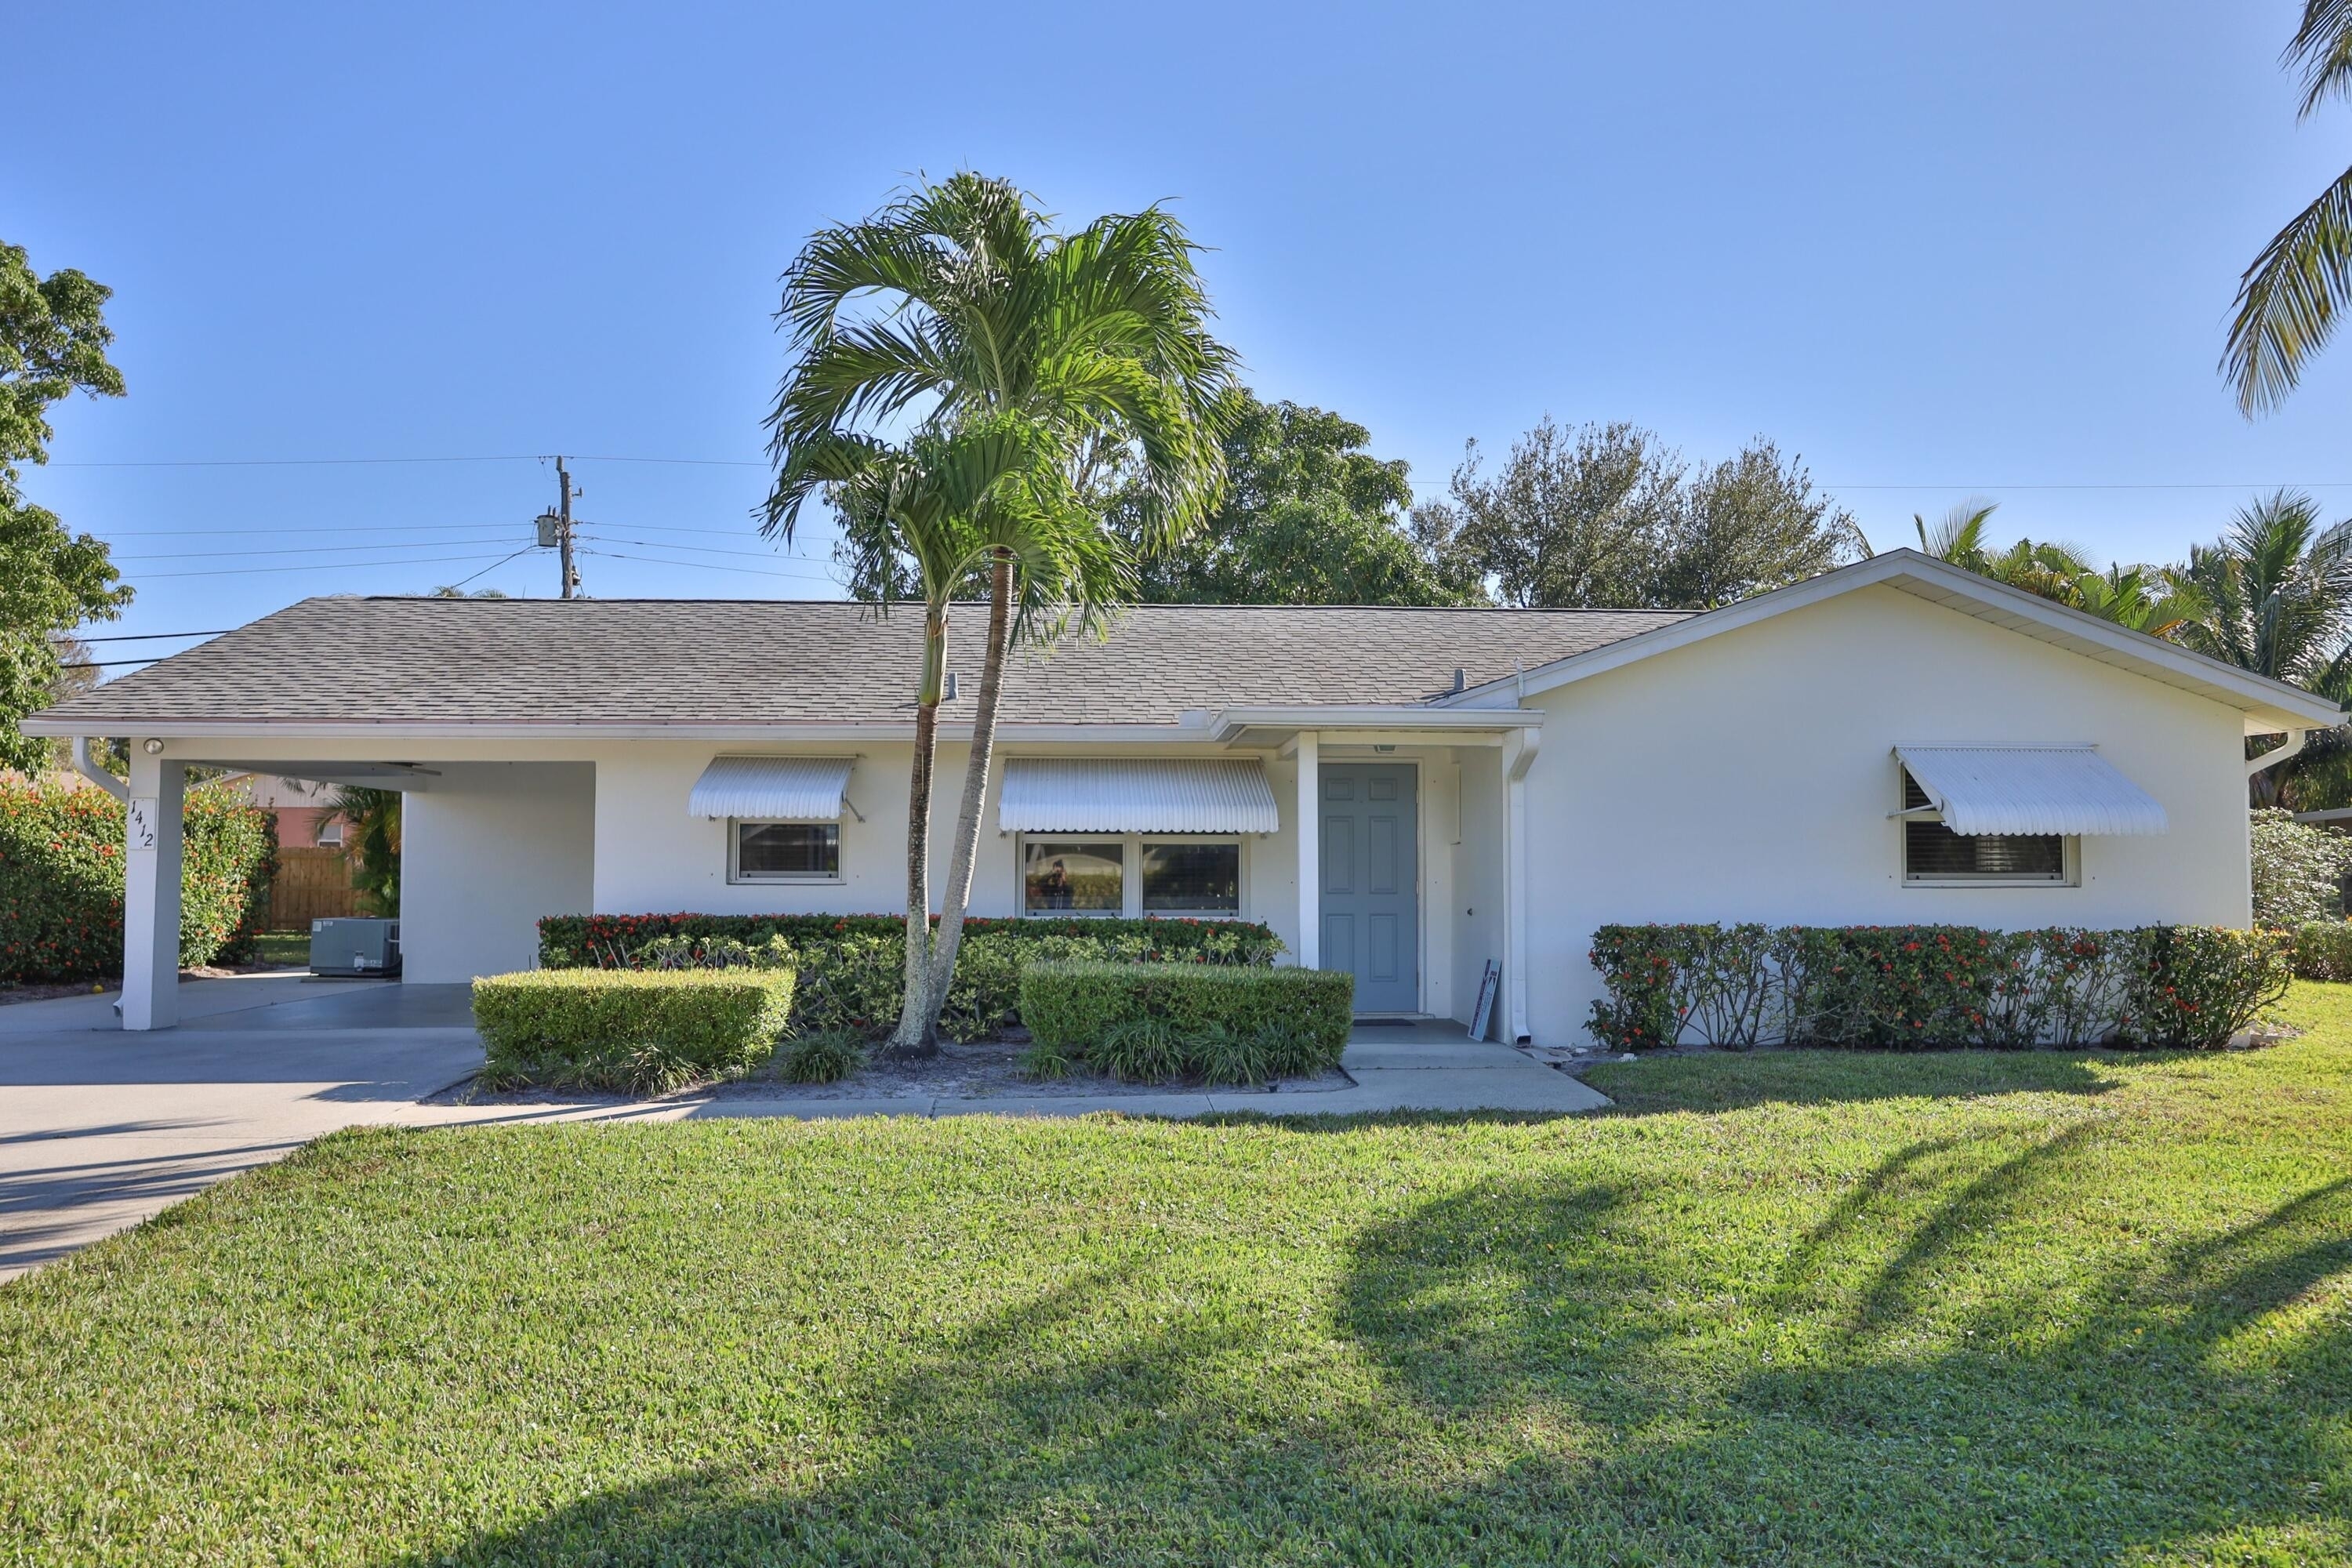 Property at Riverside on Loxahatchee, Jupiter, FL 33469